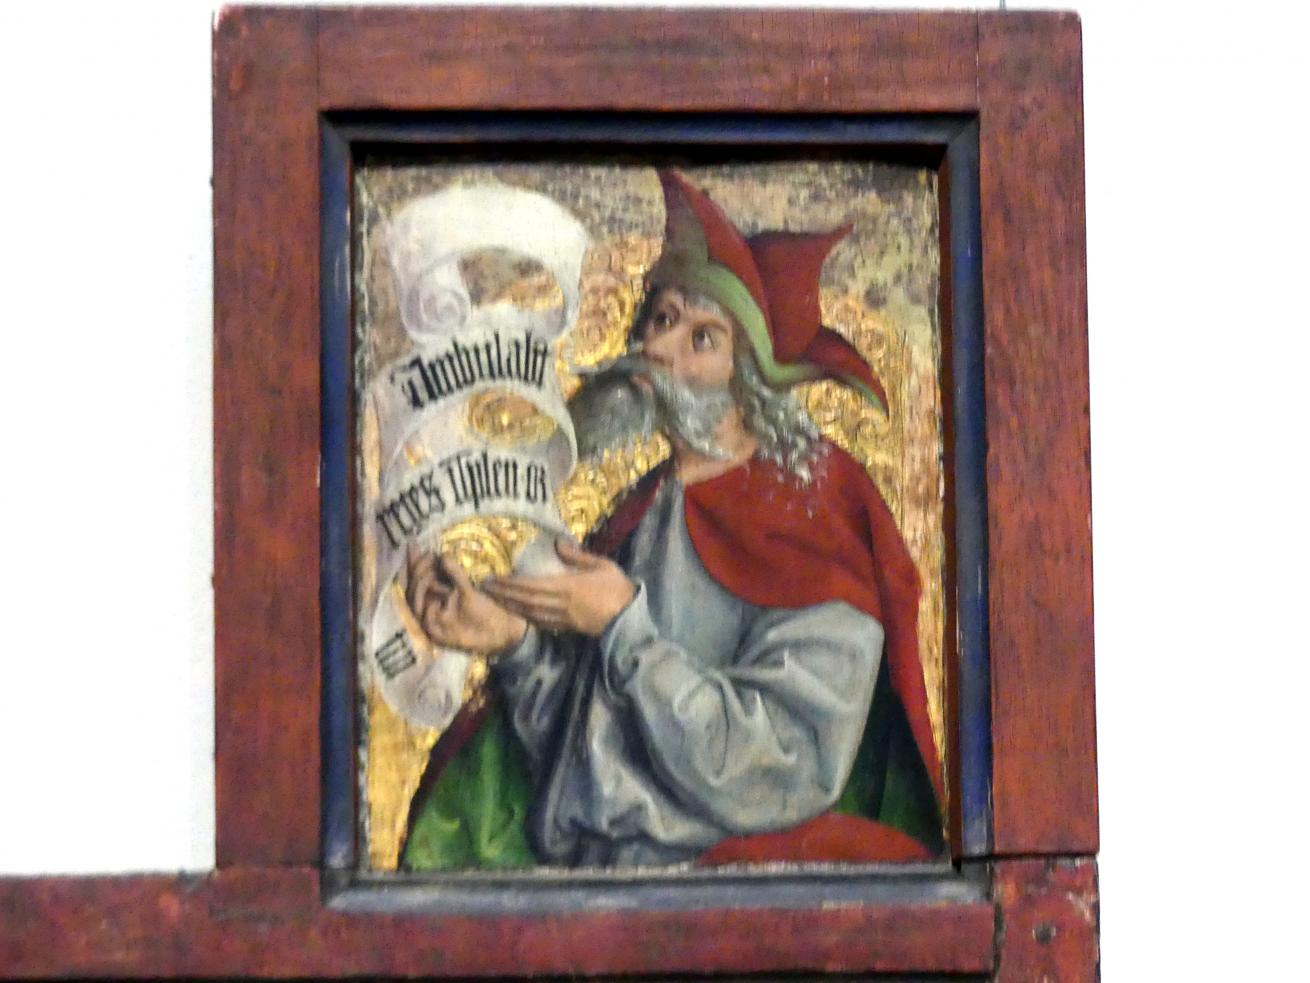 Die Geburt Christi mit Brustbild eines Propheten (Jeremias?), Kehl am Rhein, ehem. Pfarrkirche, jetzt Karlsruhe, Staatliche Kunsthalle, Saal 19, 1505, Bild 2/3